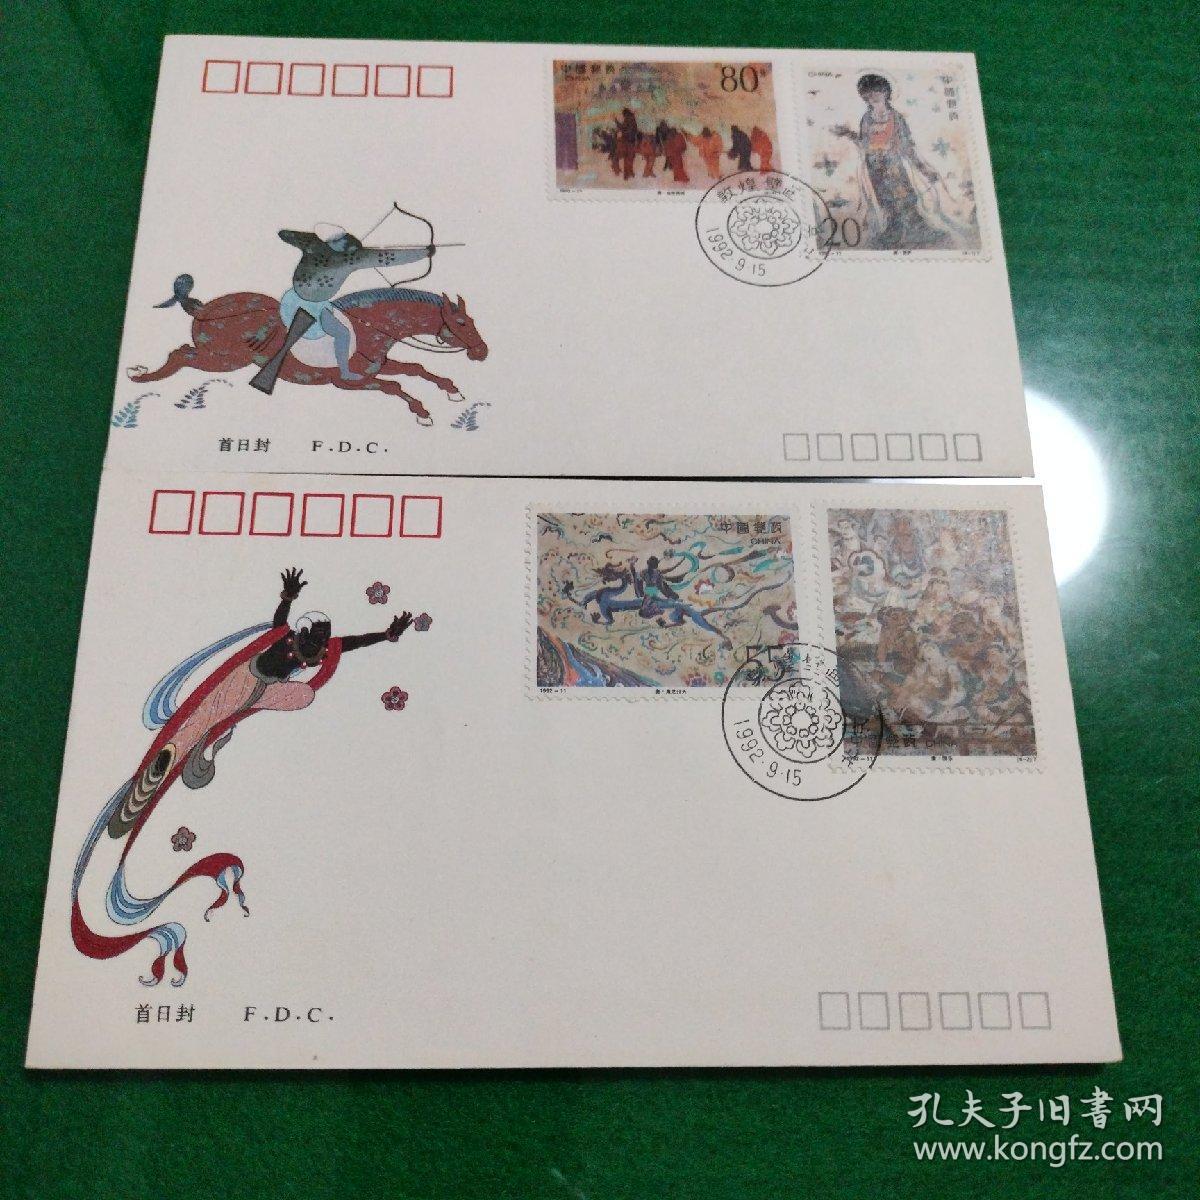 1992年敦煌壁画（第四组）特种邮票纪念封